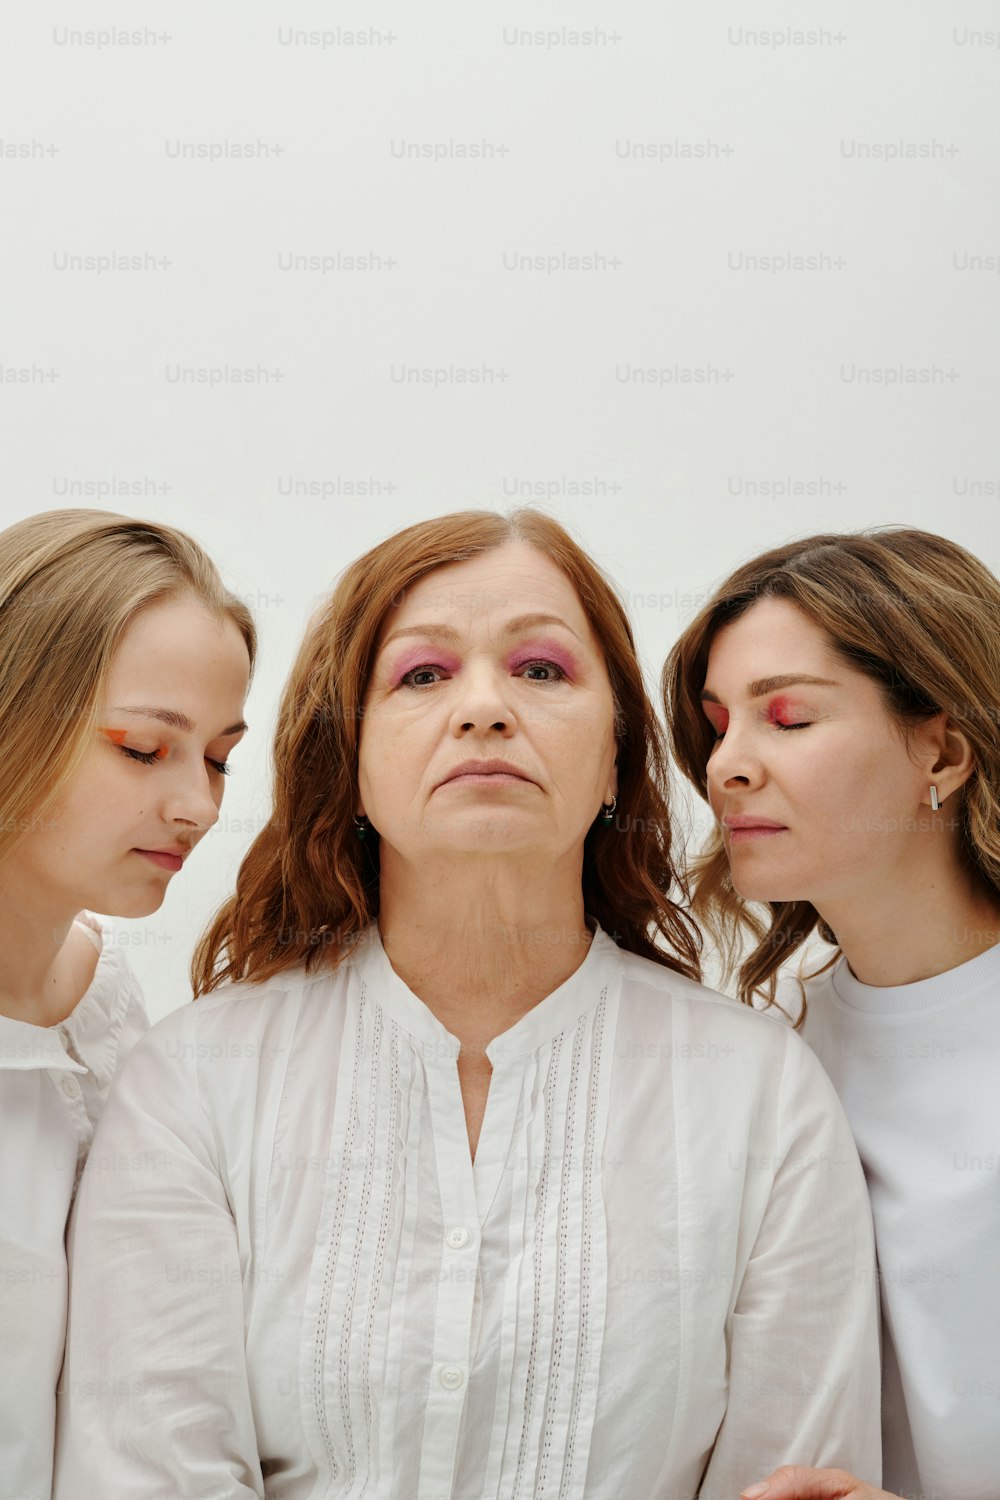 눈을 감고 나란히 서 있는 세 명의 여성